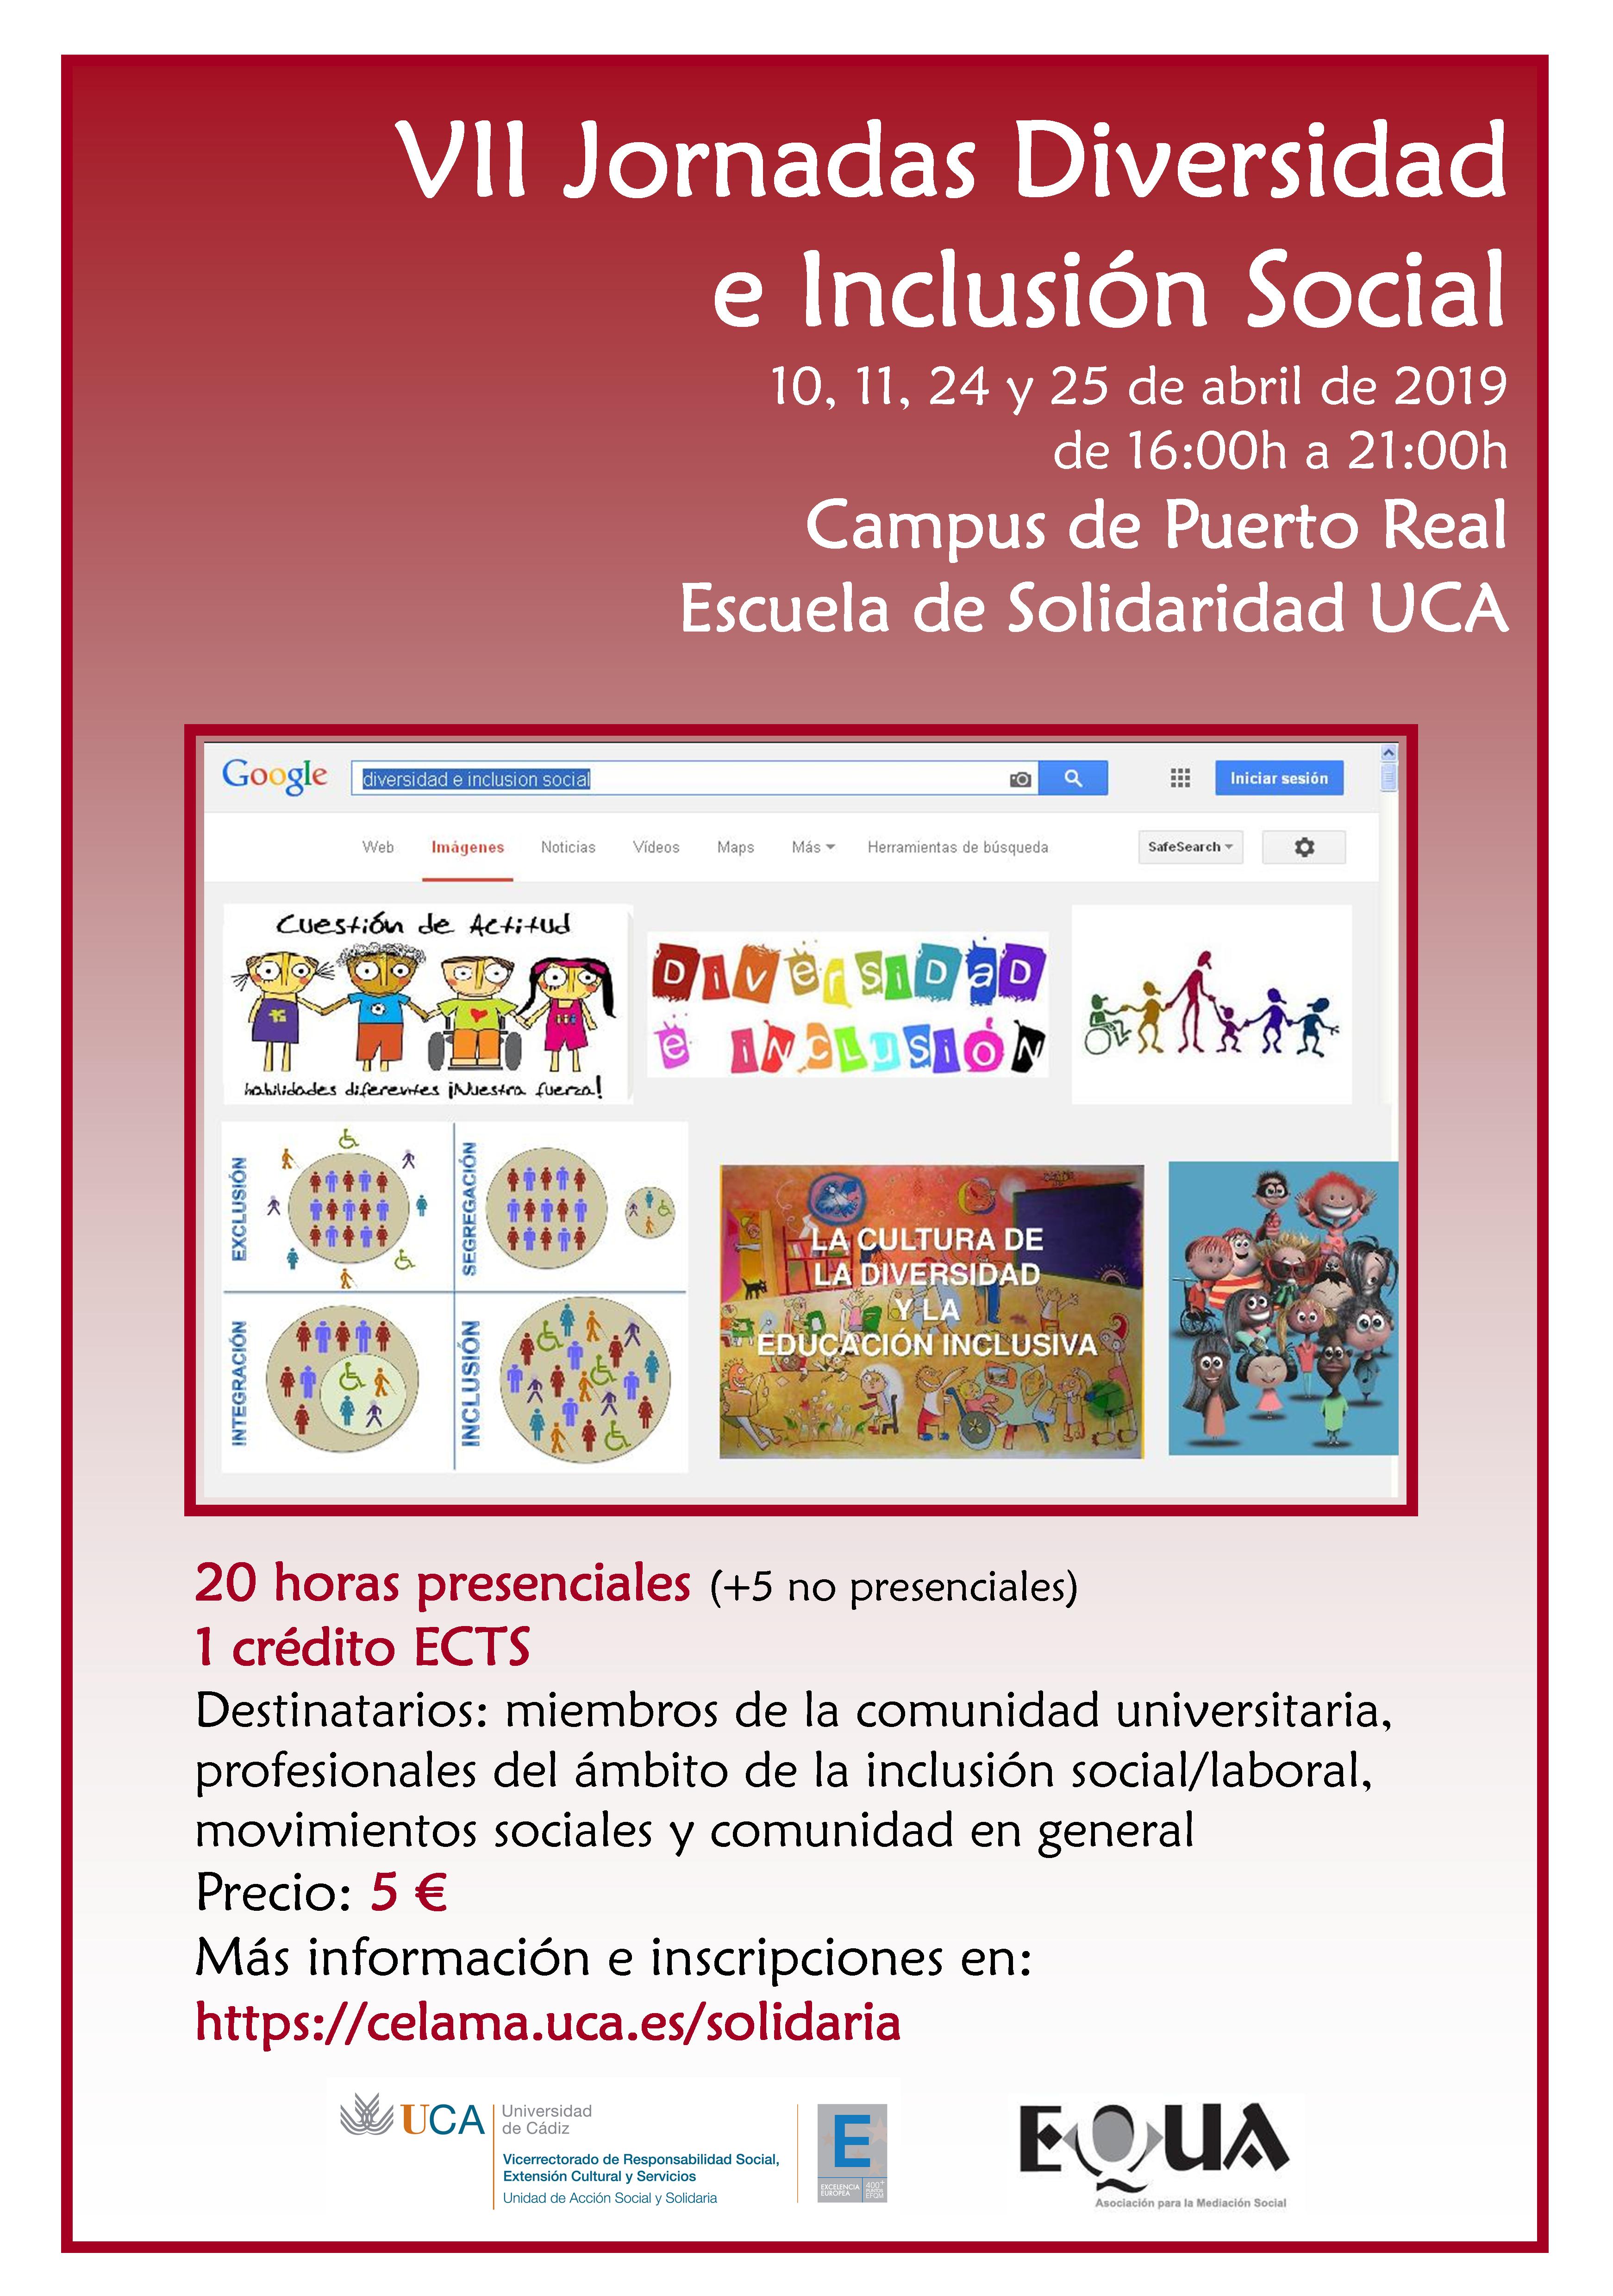 VII Jornadas Diversidad e Inclusión Social. Campus de Puerto Real. Escuela de Solidaridad UCA